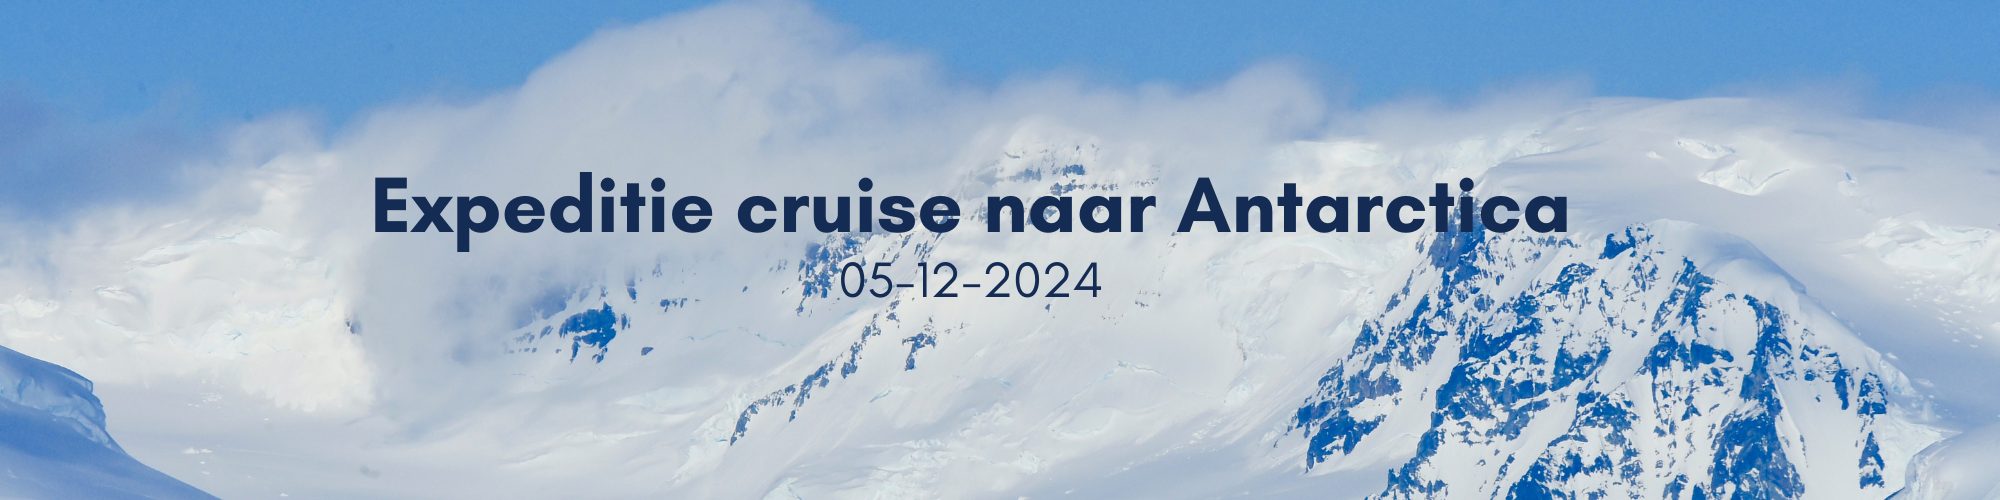 Expeditie cruise naar Antarctica 05-12-2024